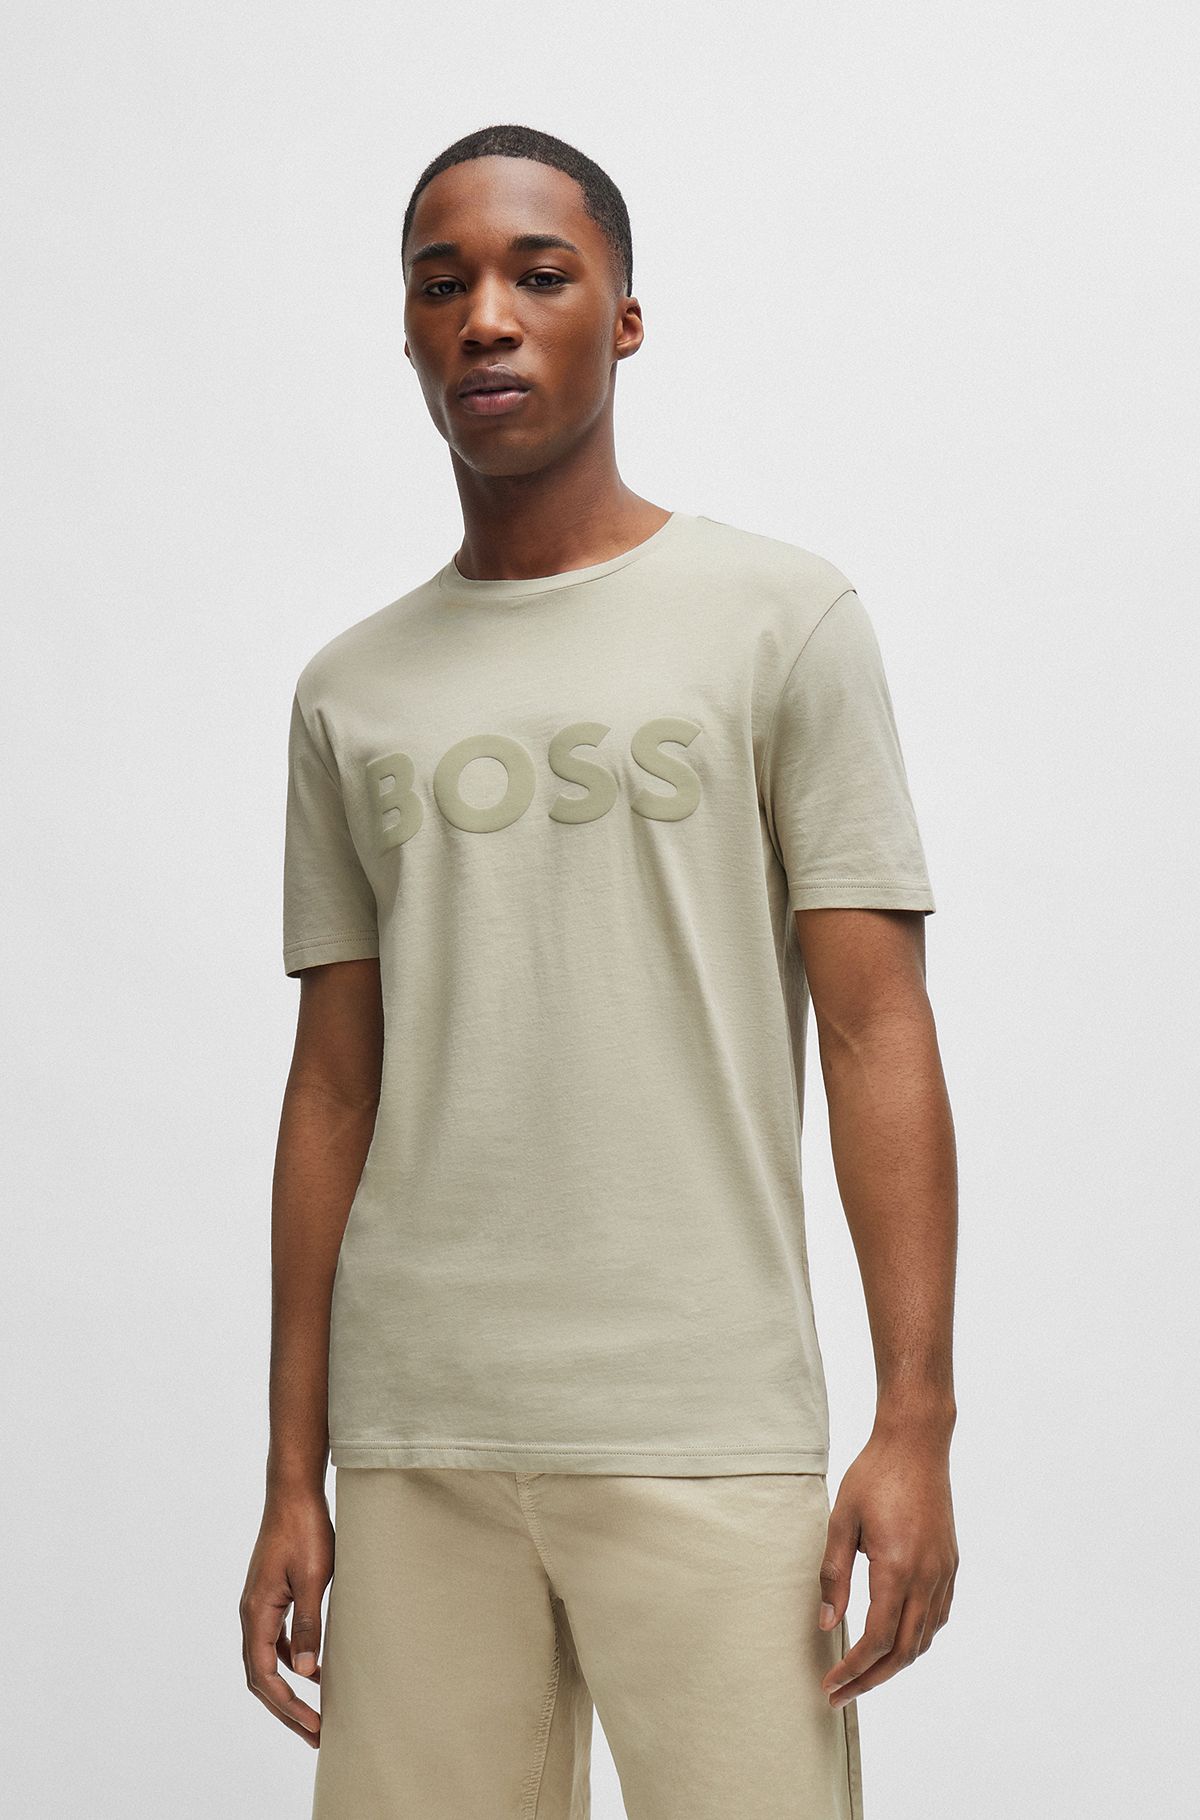 T-Shirts in Beige by HUGO BOSS | Men